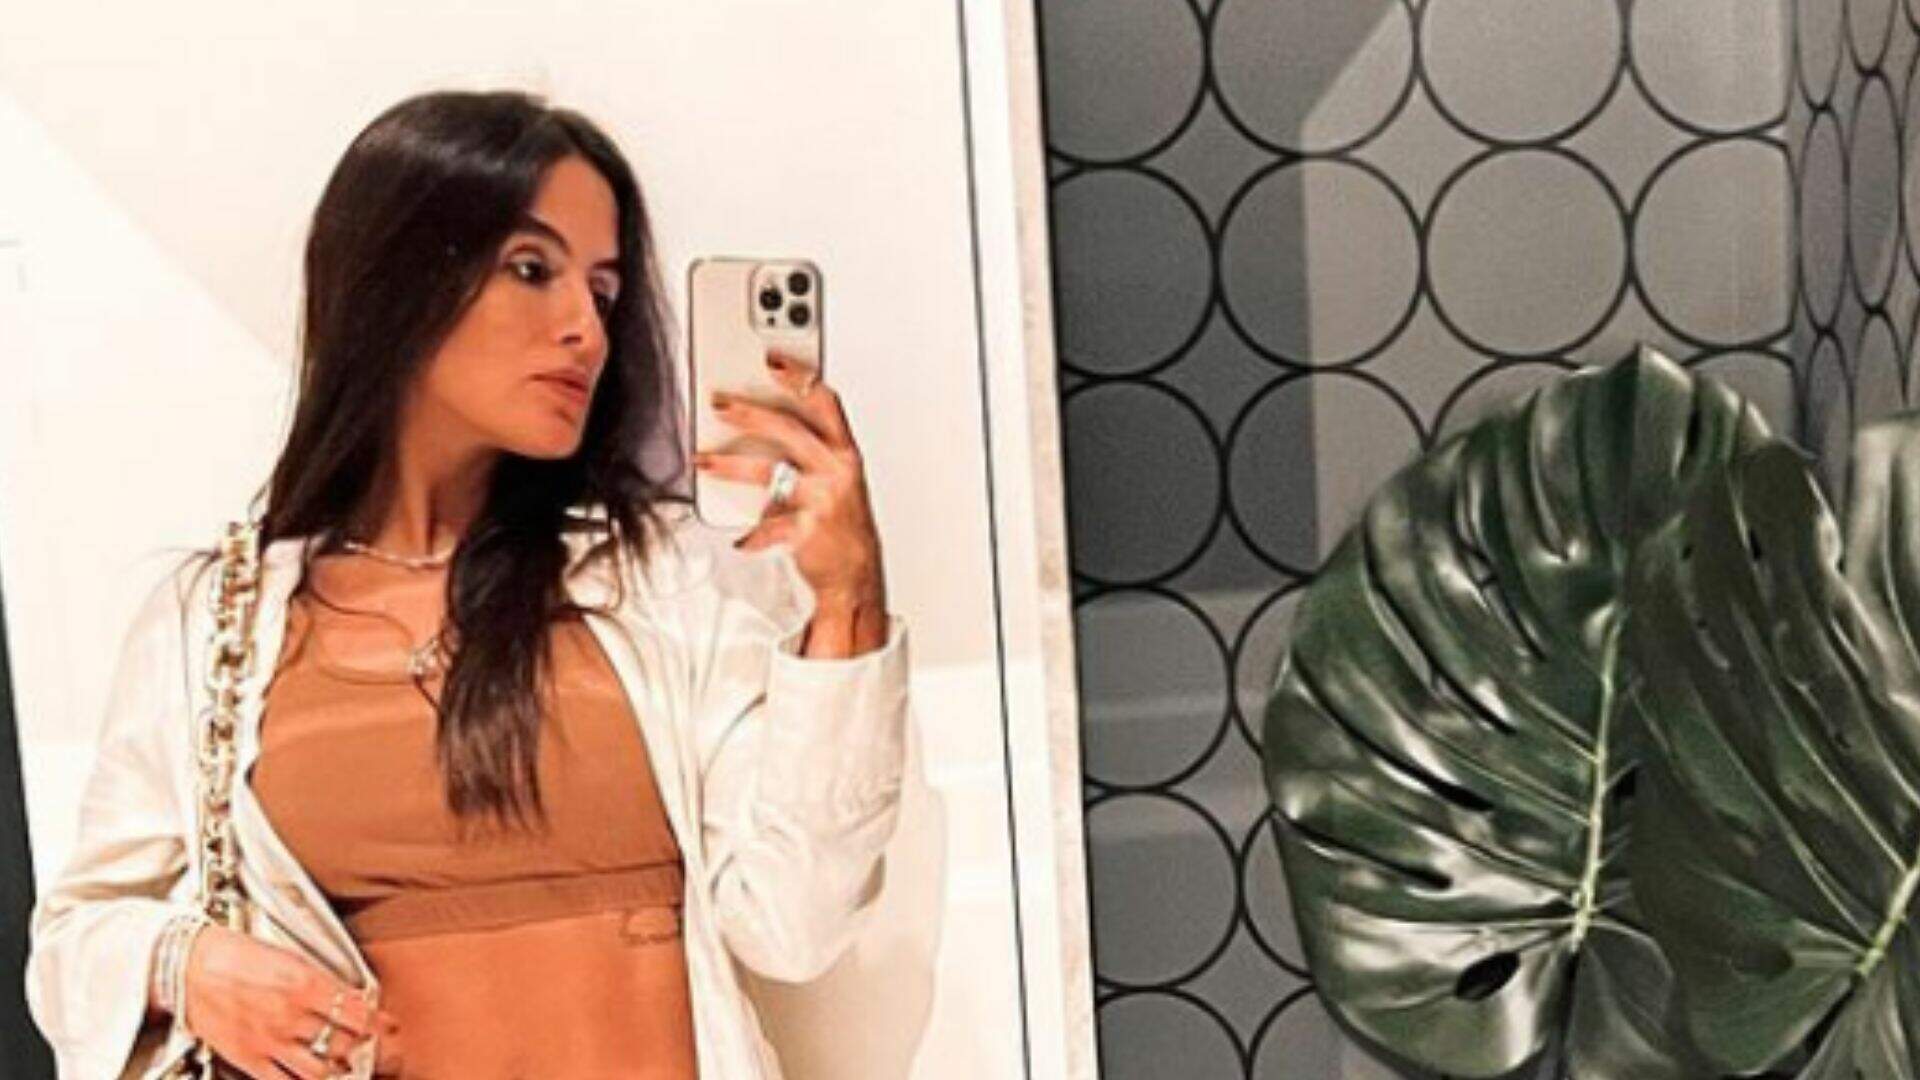 Carol Peixinho aproveita espelho de banheiro para mostrar marquinha polêmica: “Sensualizou” - Metropolitana FM